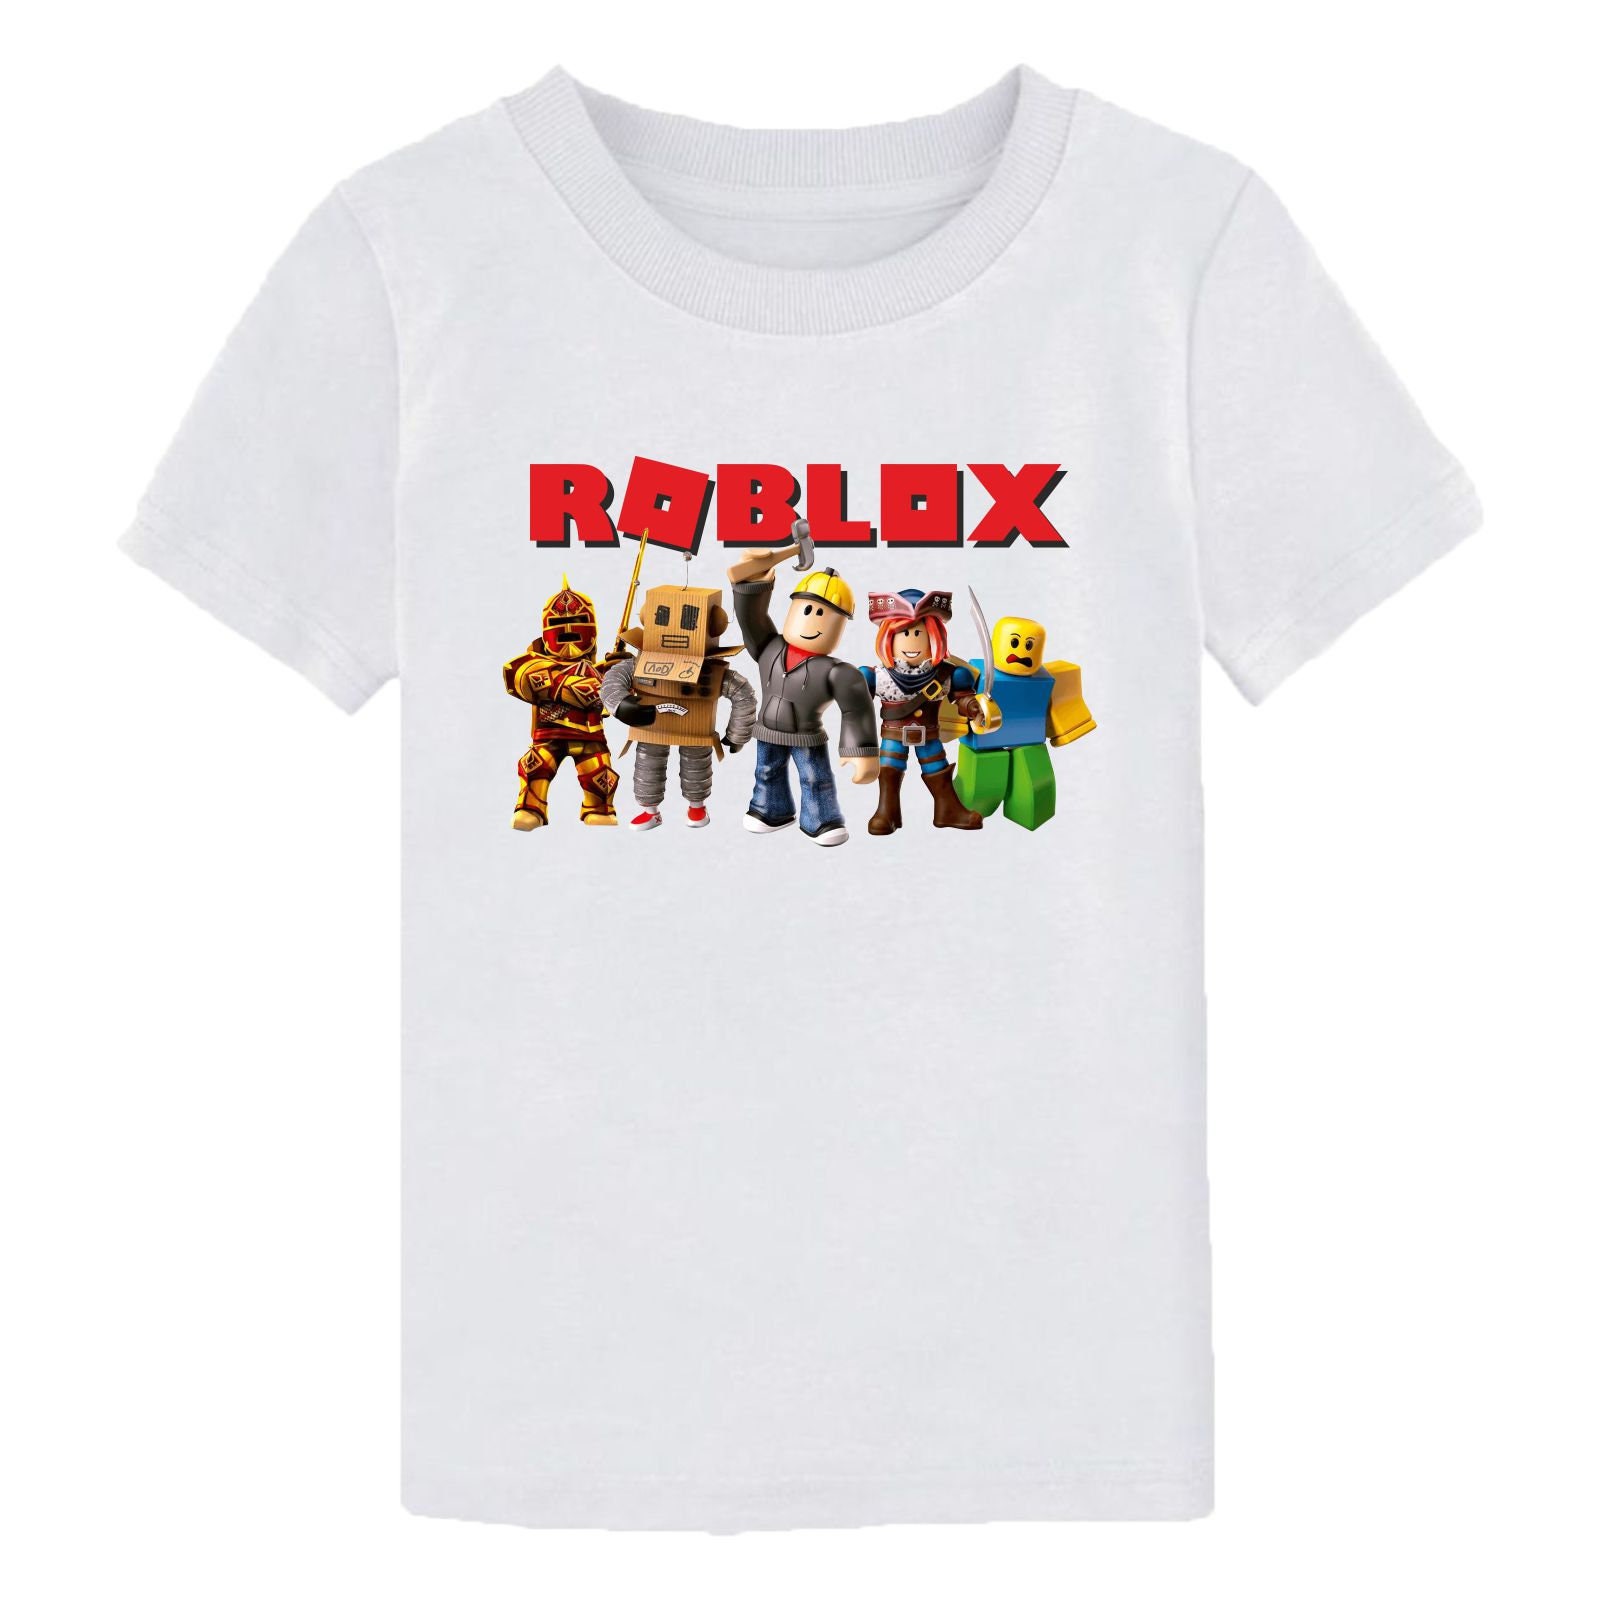 ROBLOX LOGO DESIGN T-SHIRT GAMING GAMER XBOX BOYS GIRLS ADULT XMAS